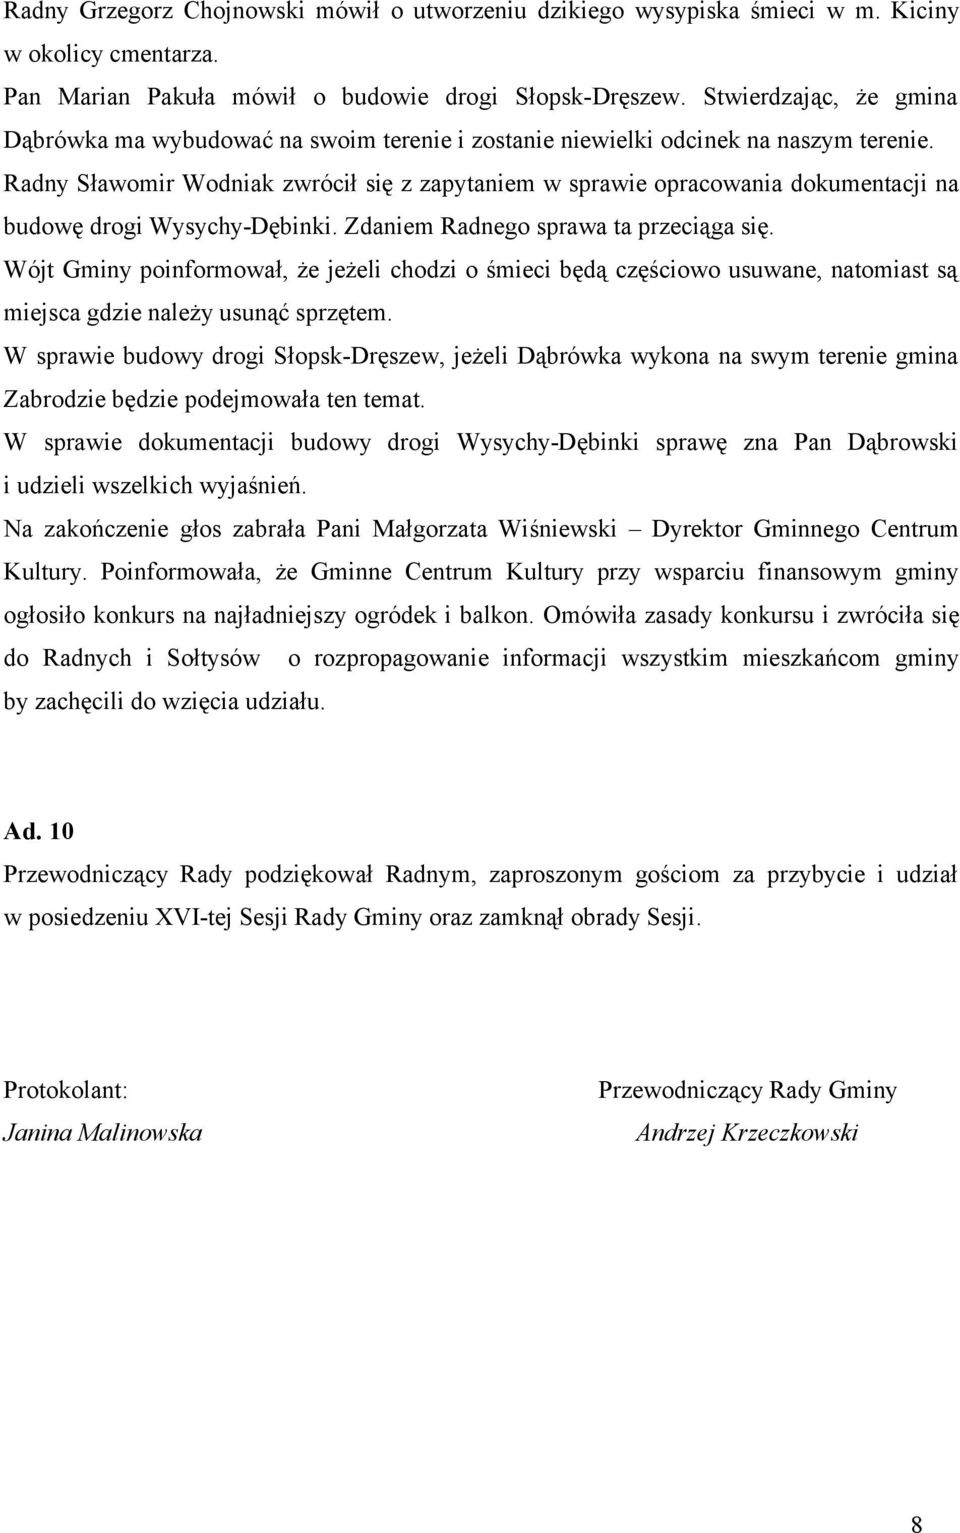 Radny Sławomir Wodniak zwrócił się z zapytaniem w sprawie opracowania dokumentacji na budowę drogi Wysychy-Dębinki. Zdaniem Radnego sprawa ta przeciąga się.